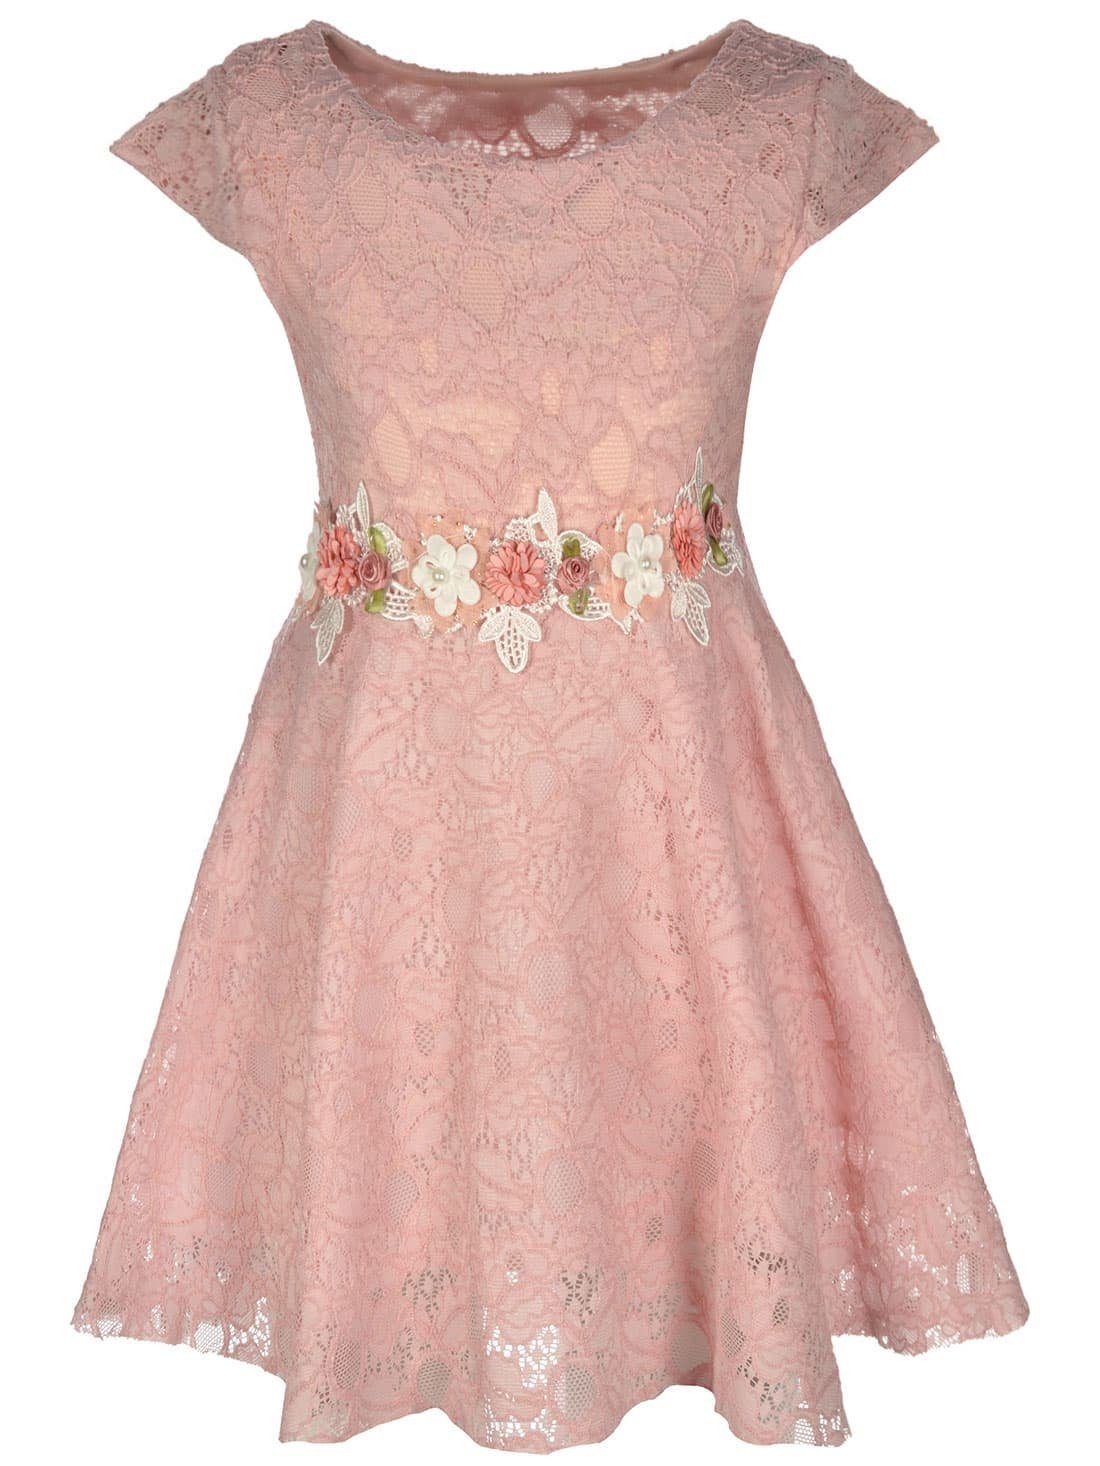 Mädchenkleider in rosa online kaufen | OTTO